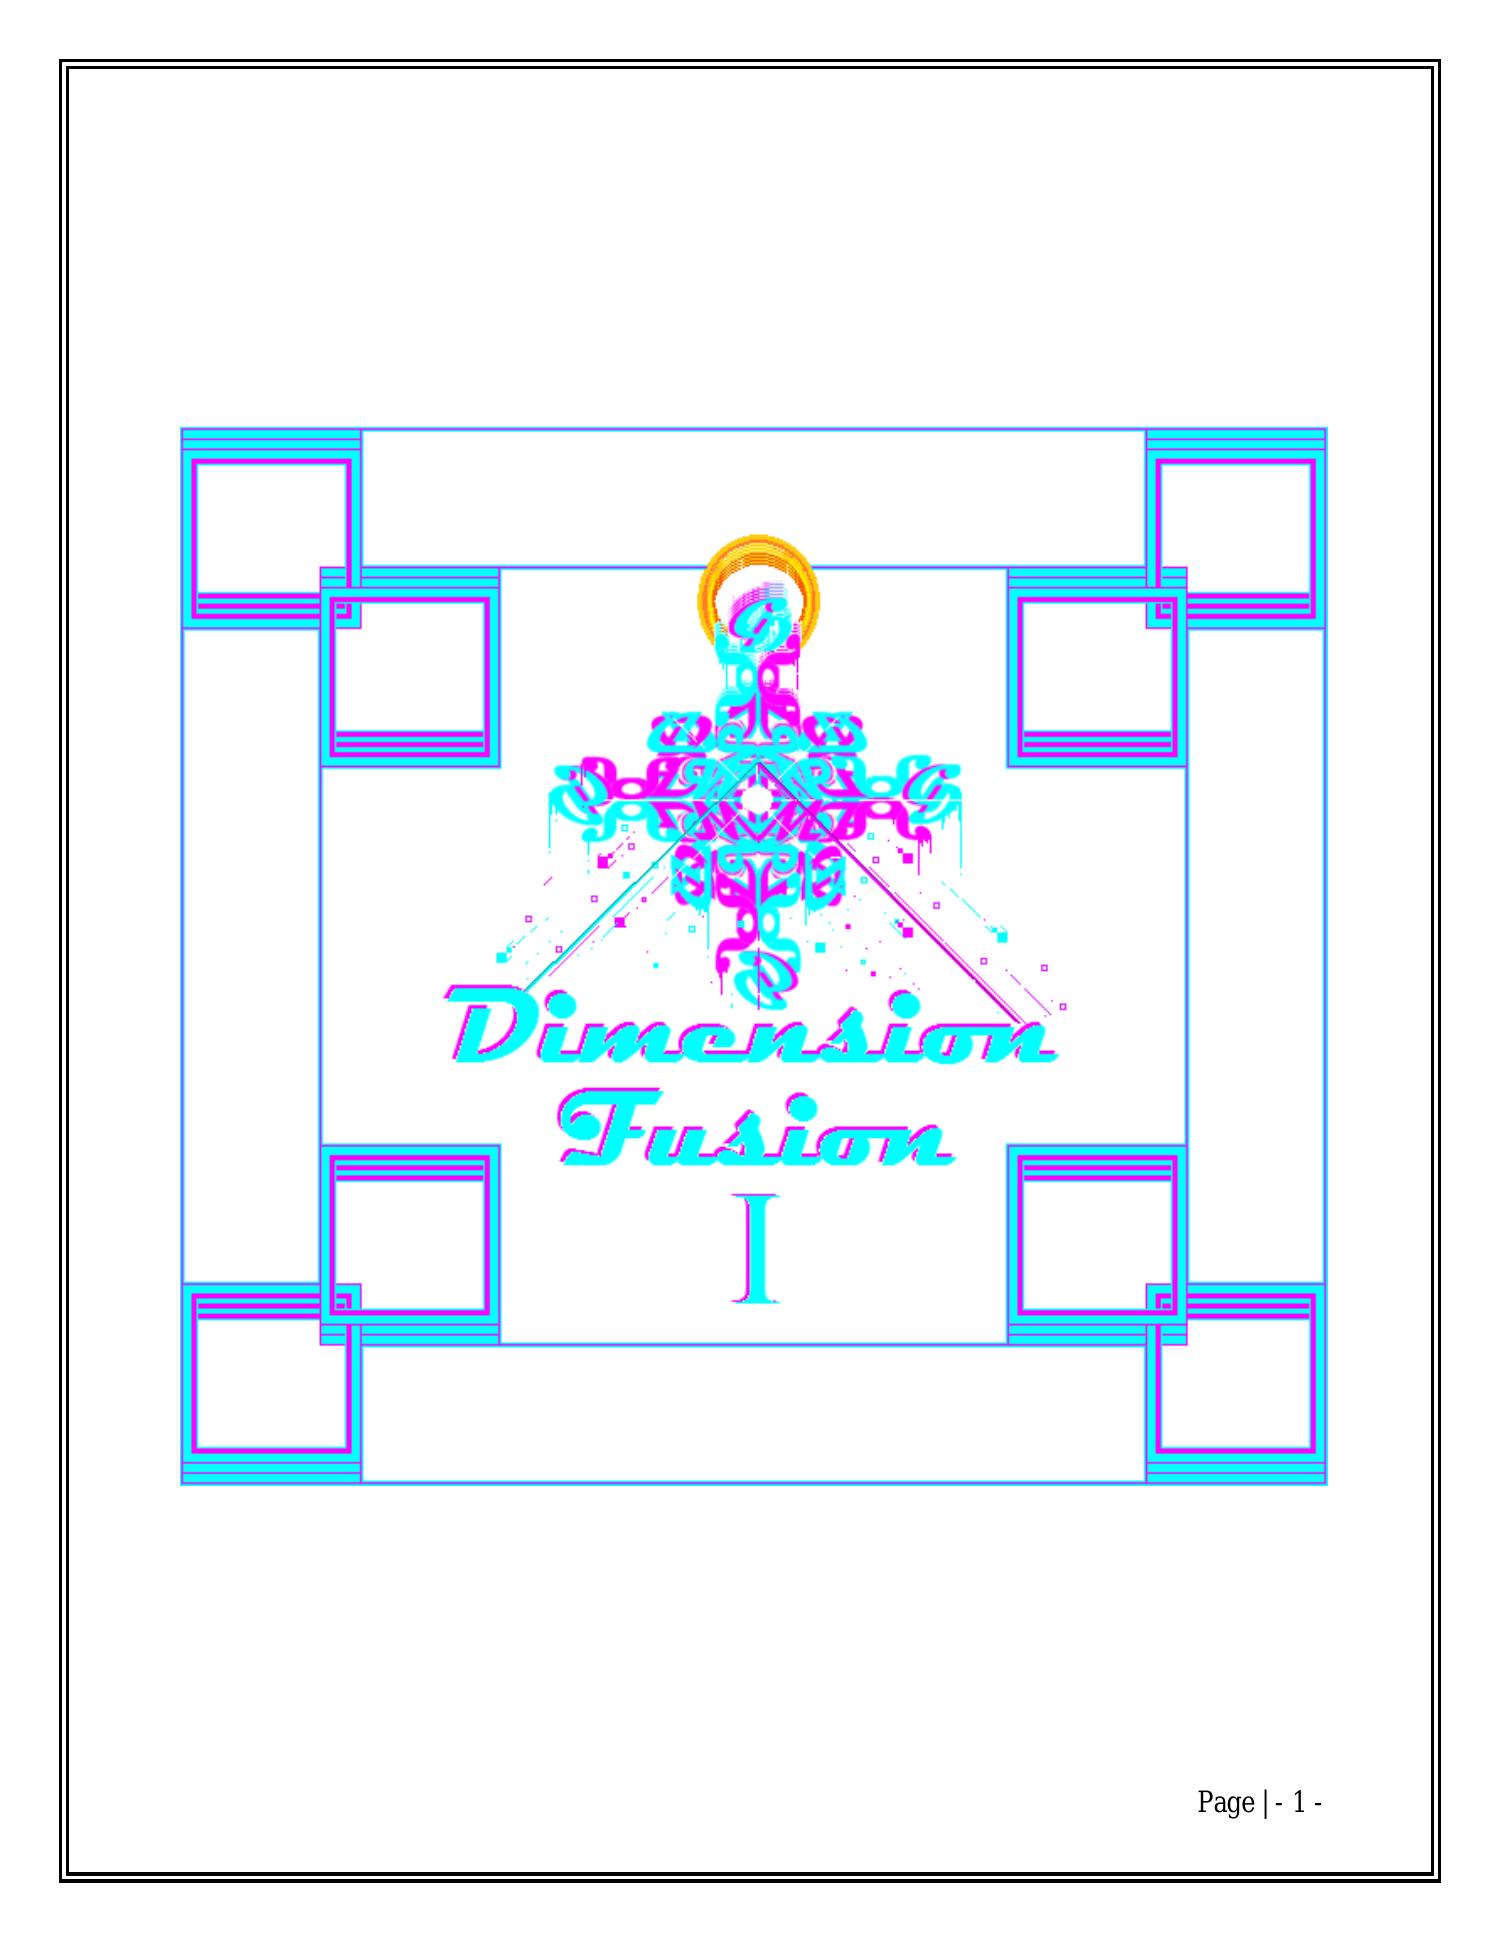 dimension fusion